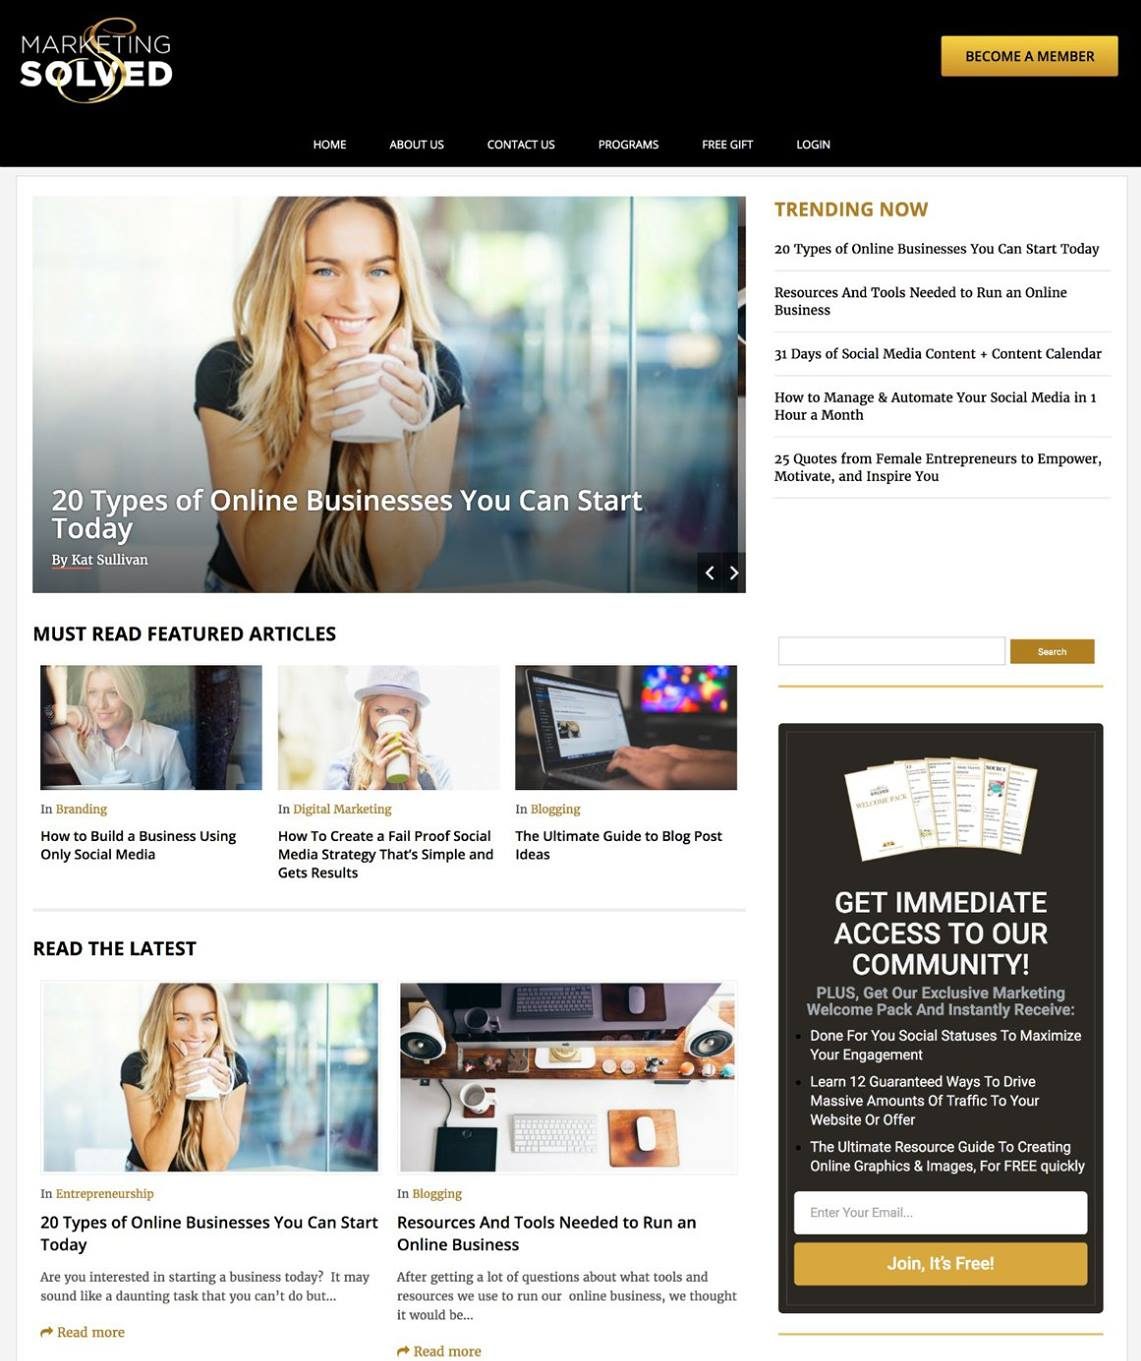 Marketing Solved Website - Blog 